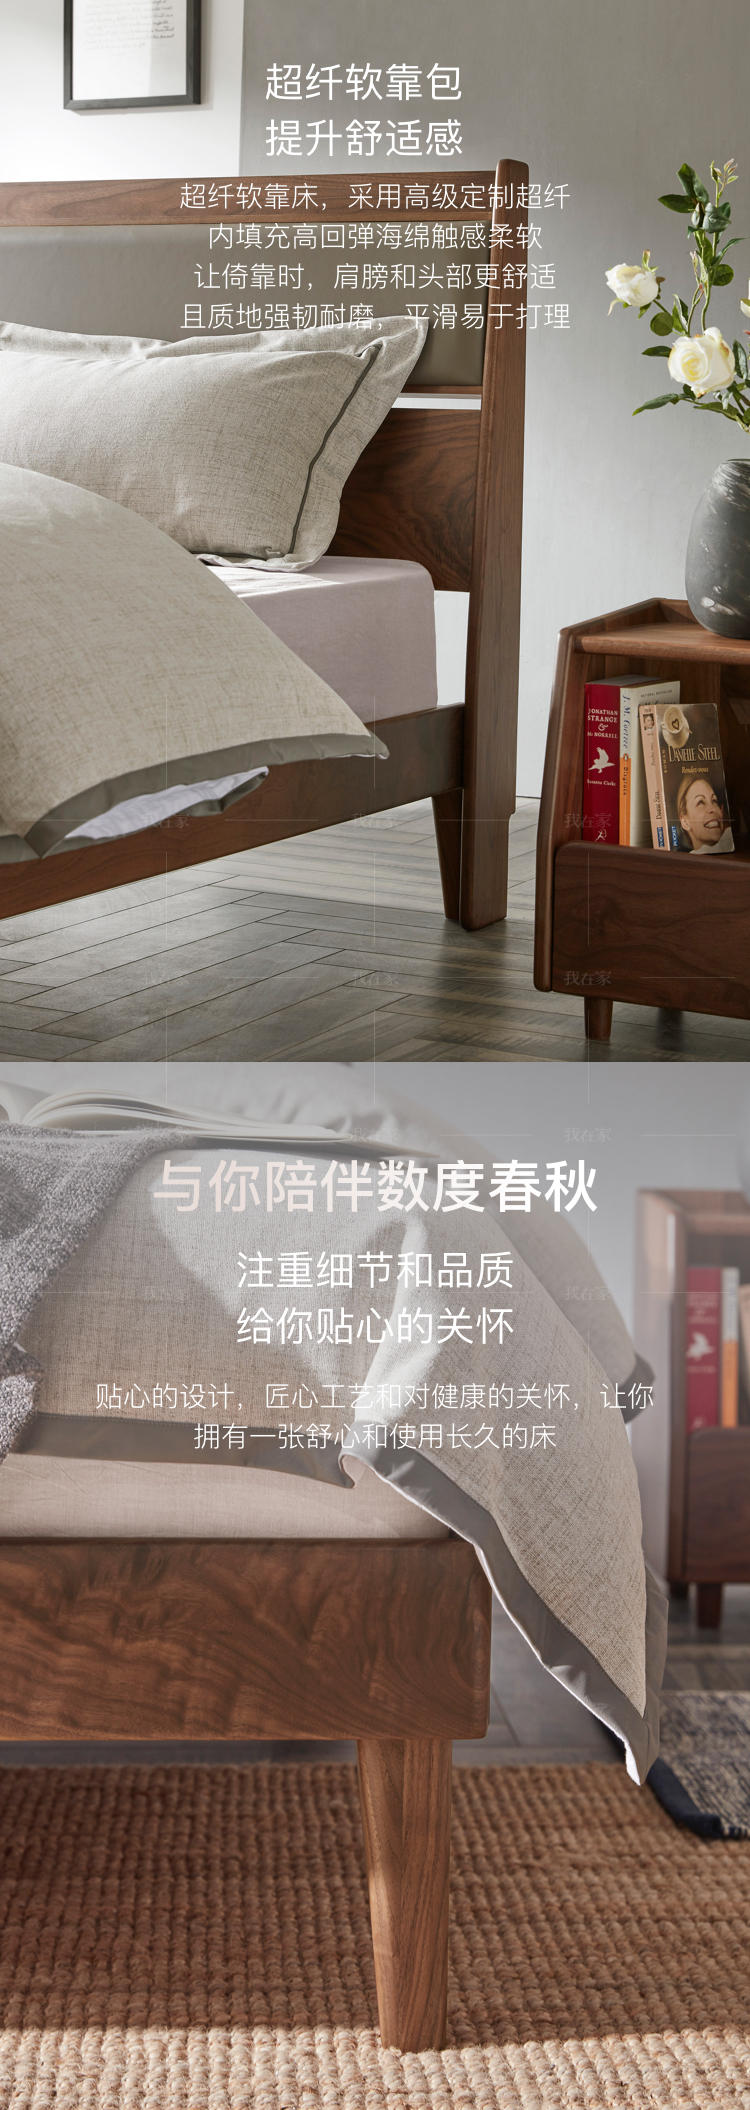 原木北欧风格空白双人床（现货特惠）的家具详细介绍